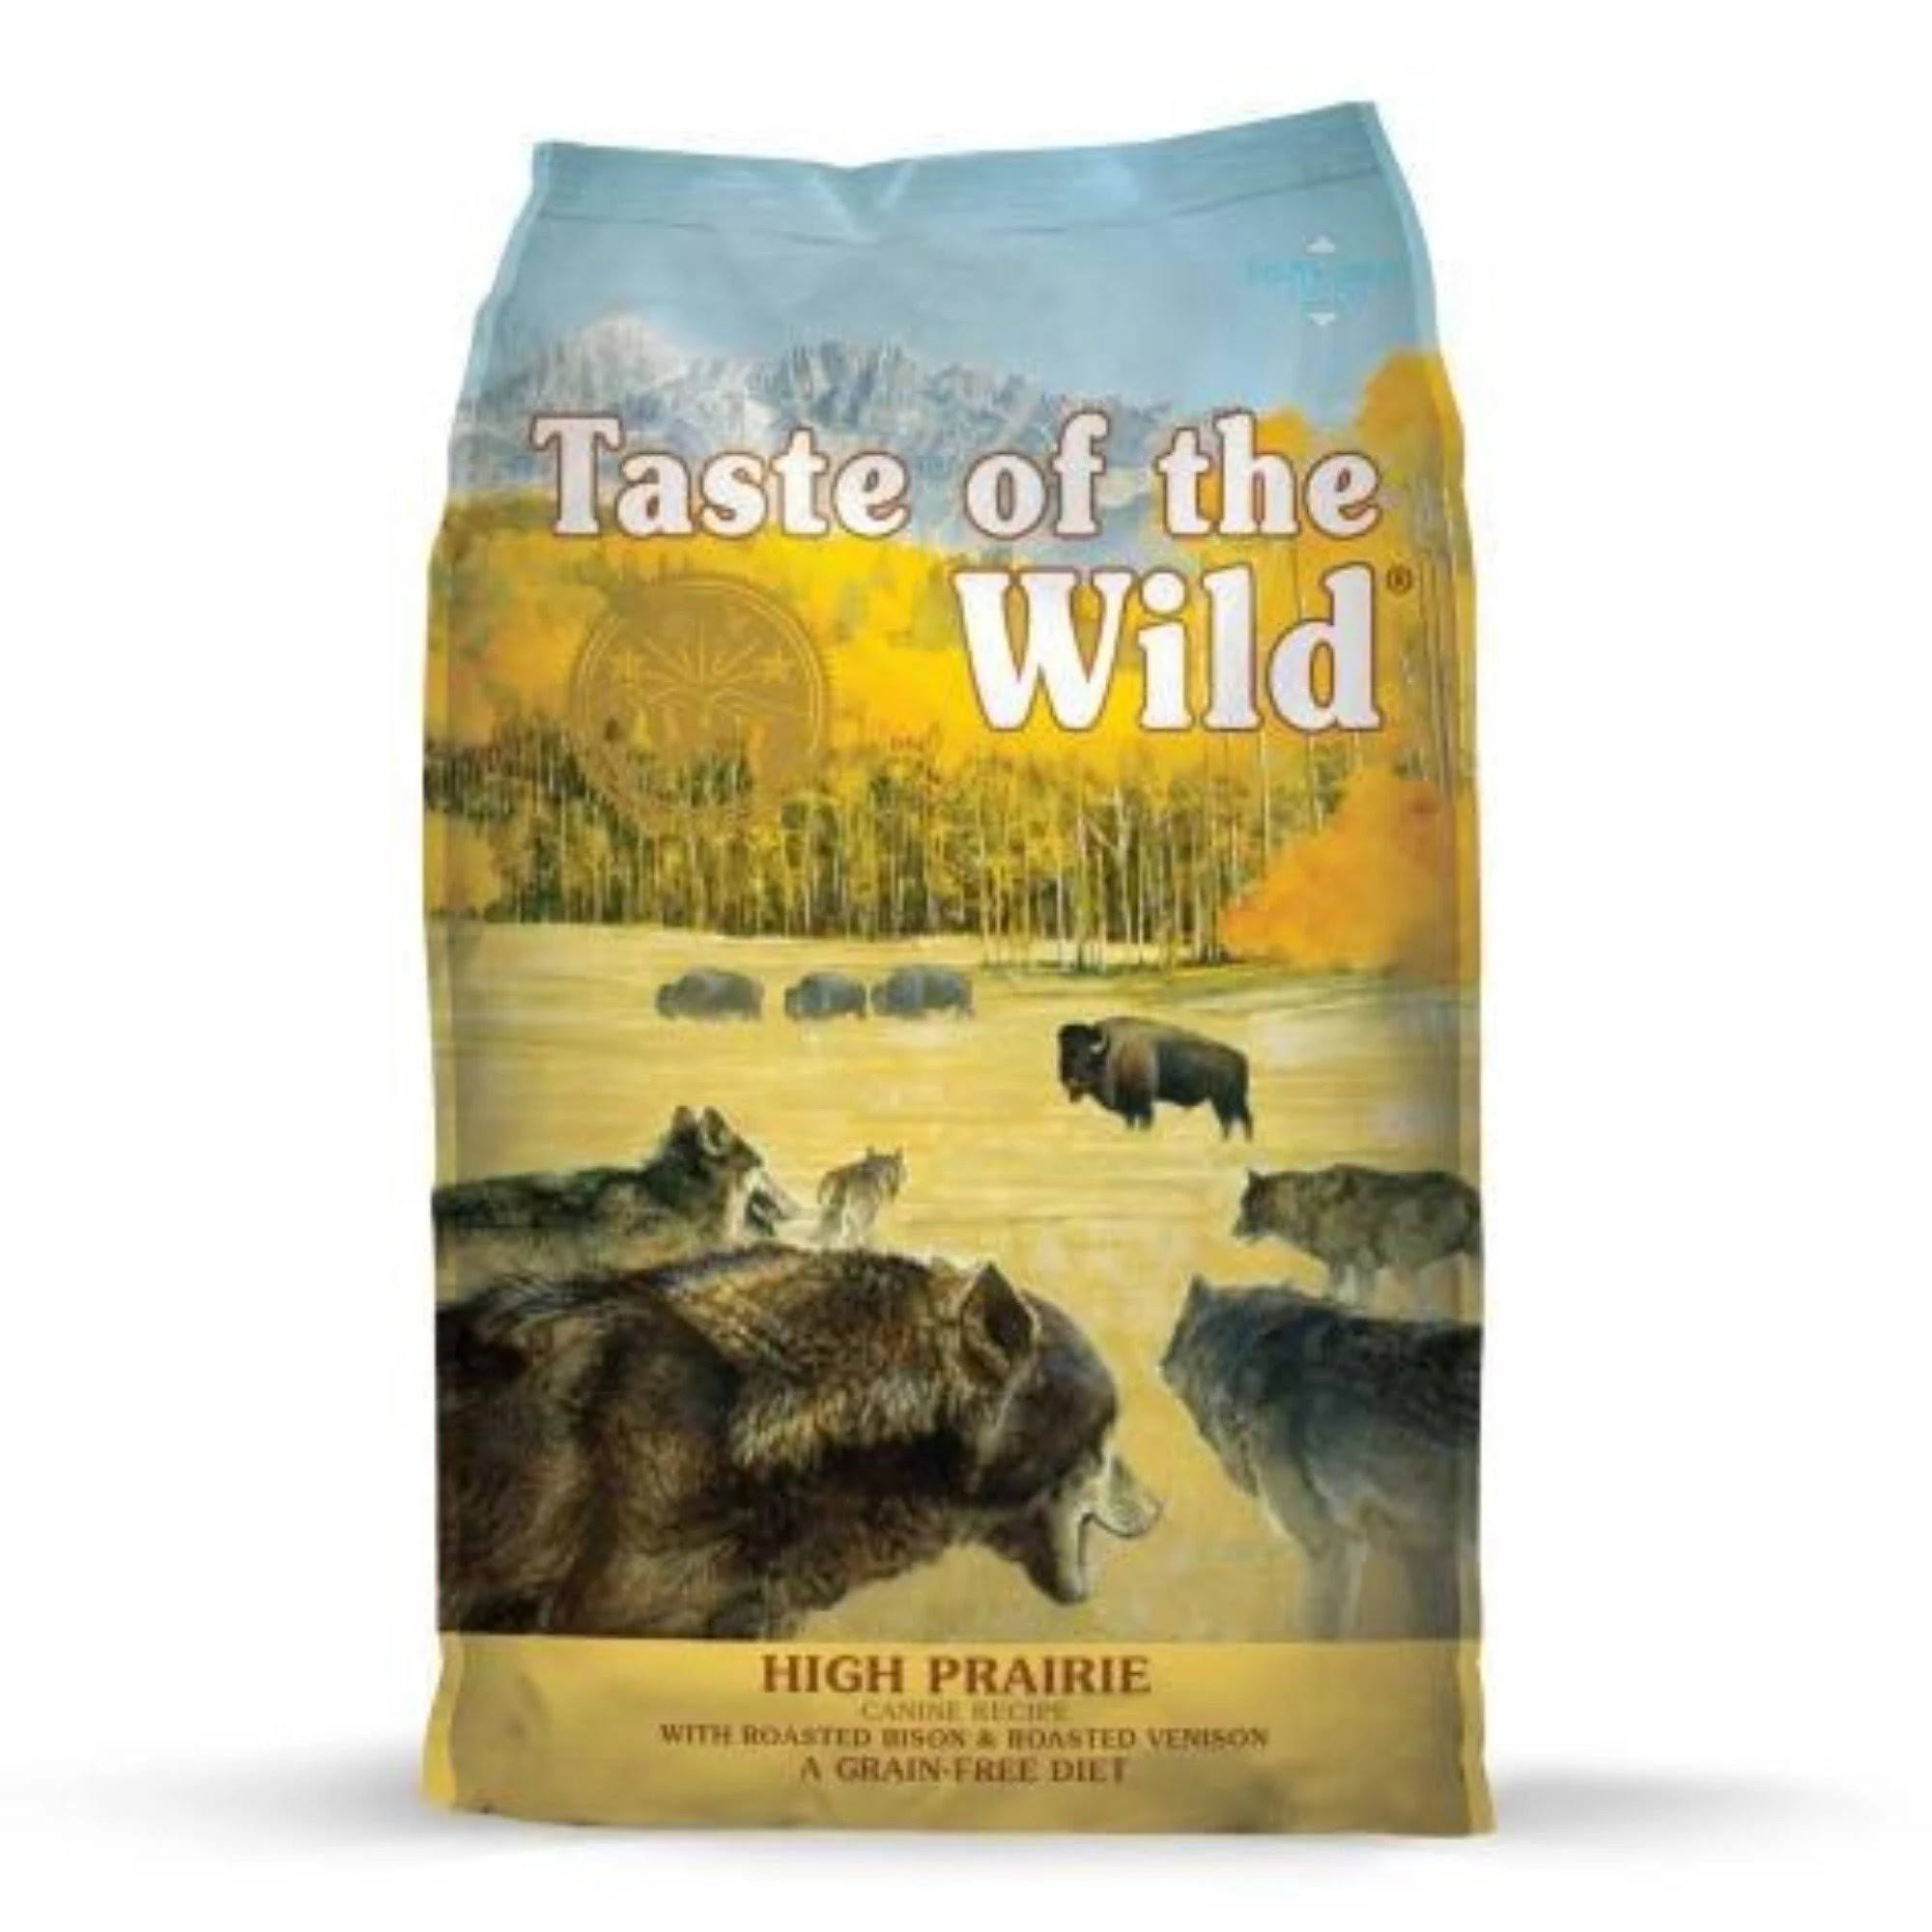 Taste of The Wild High Prairie Dog Food - Bison & Venison - 28 lbs.